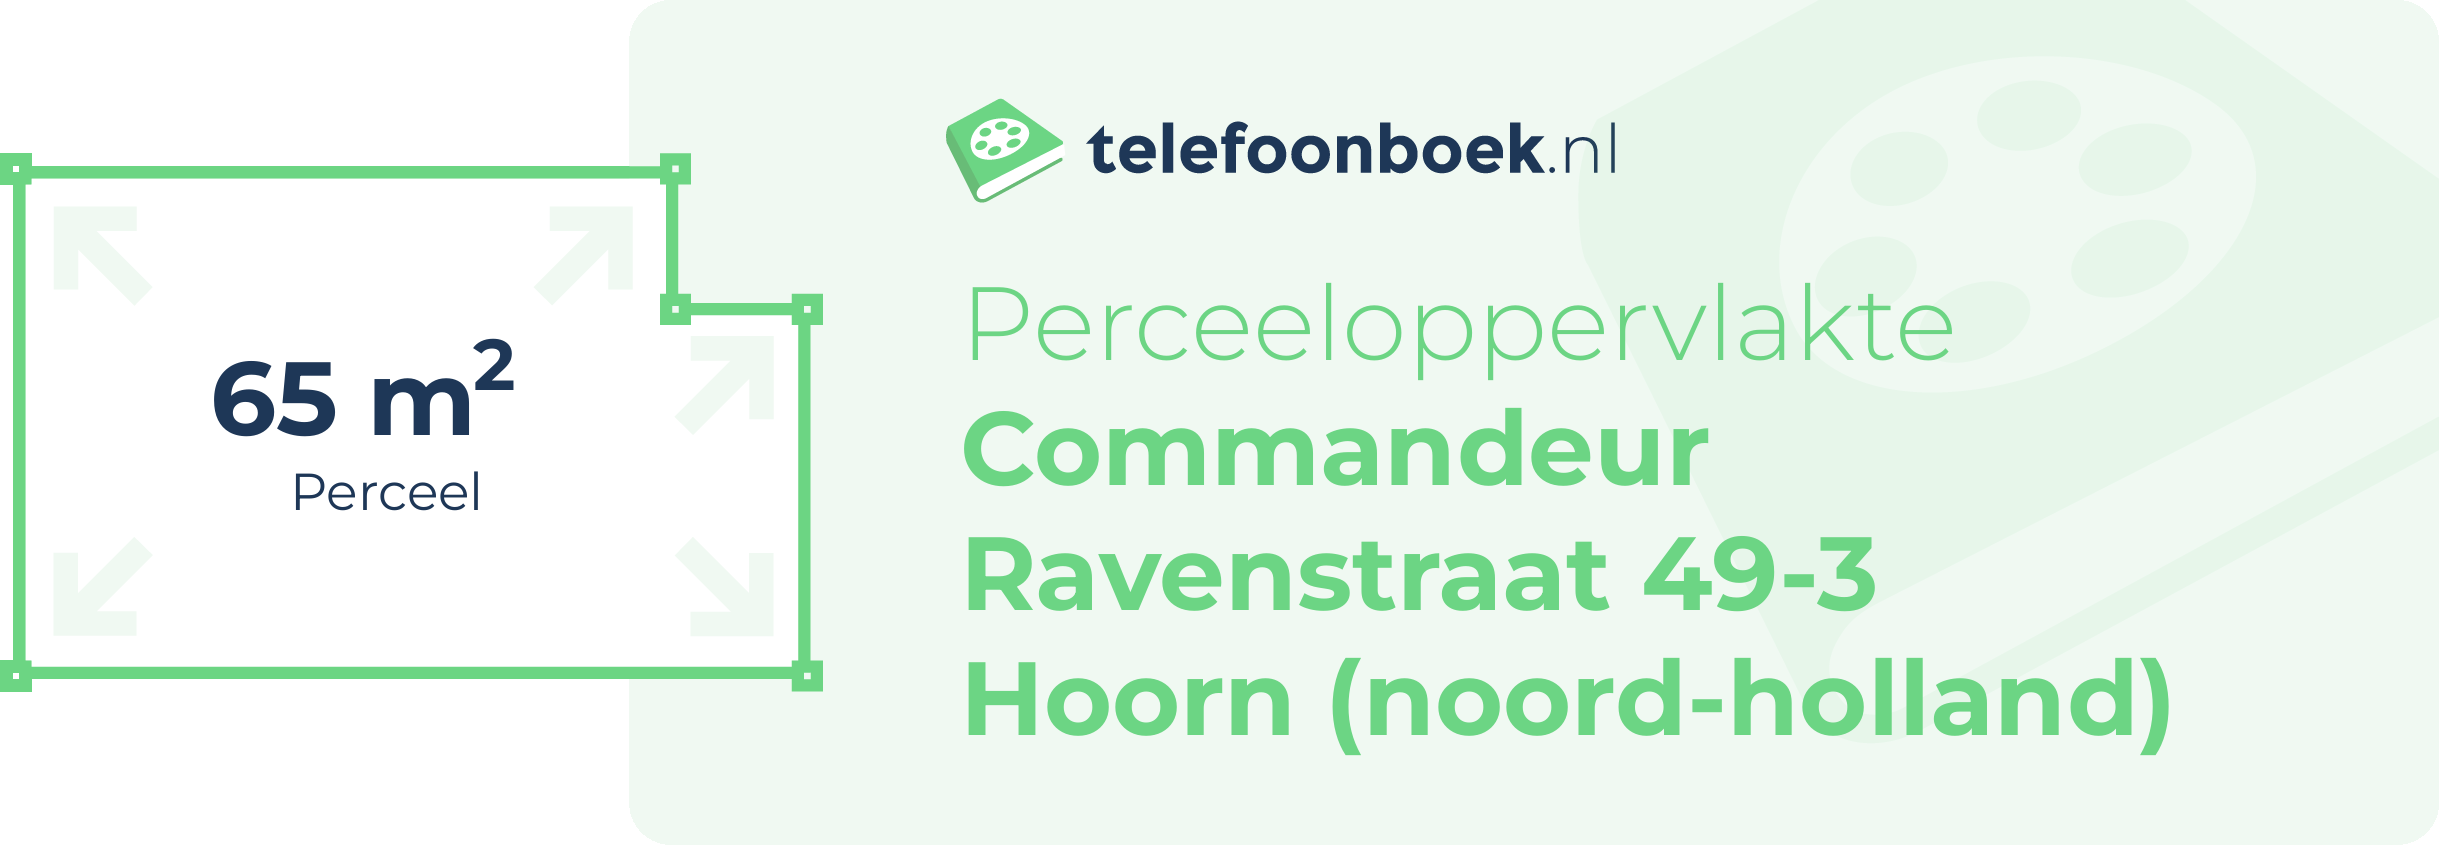 Perceeloppervlakte Commandeur Ravenstraat 49-3 Hoorn (Noord-Holland)